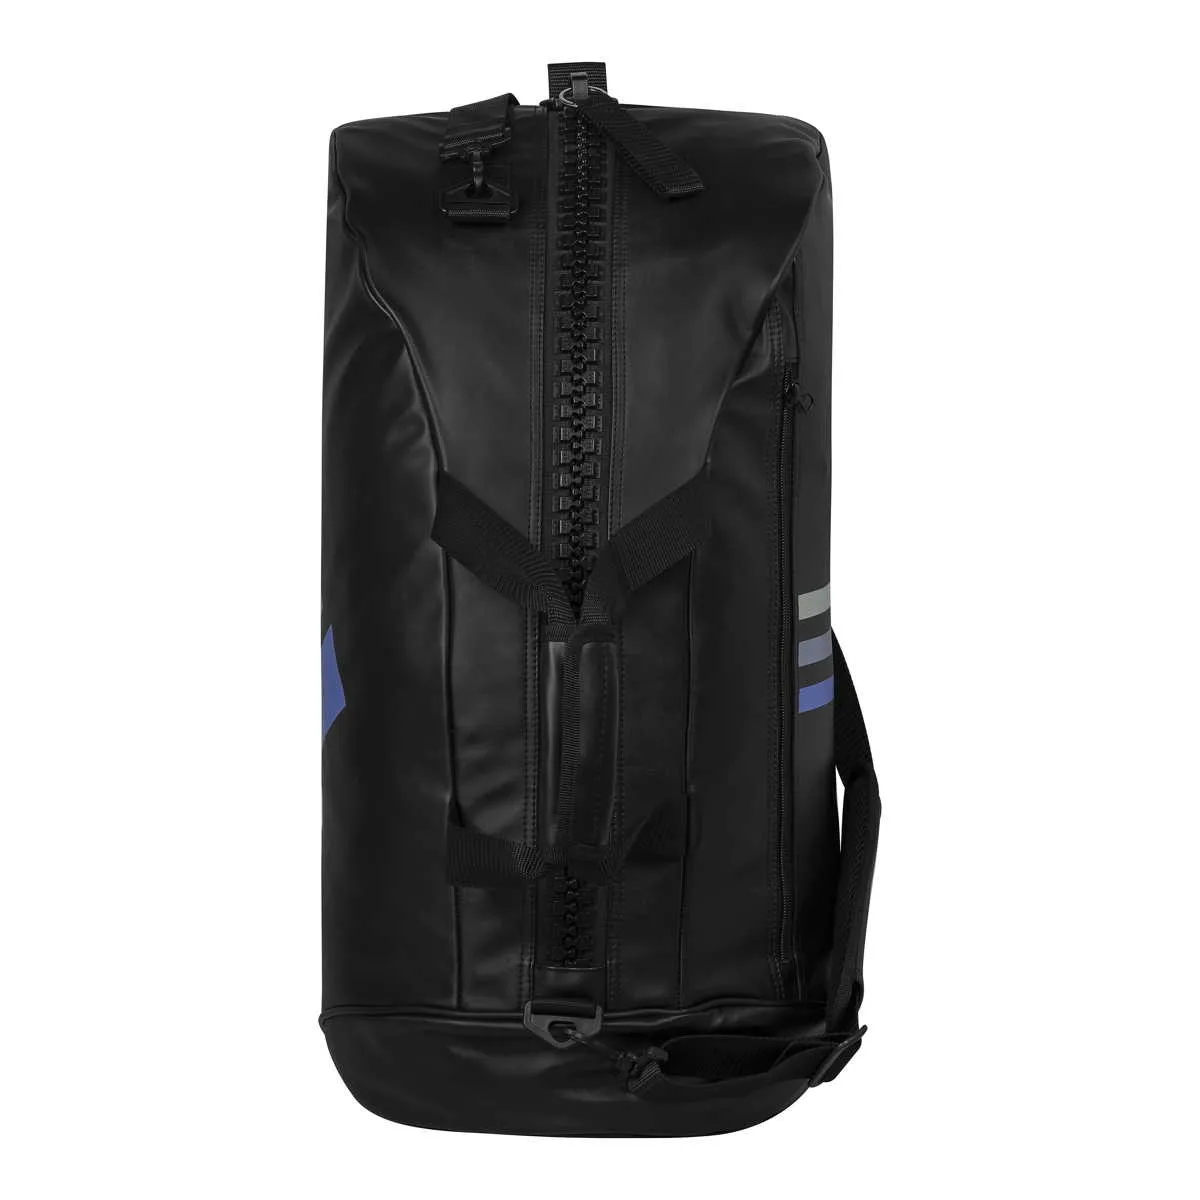 adidas sports bag - mochila deportiva imitación cuero negro/blanco